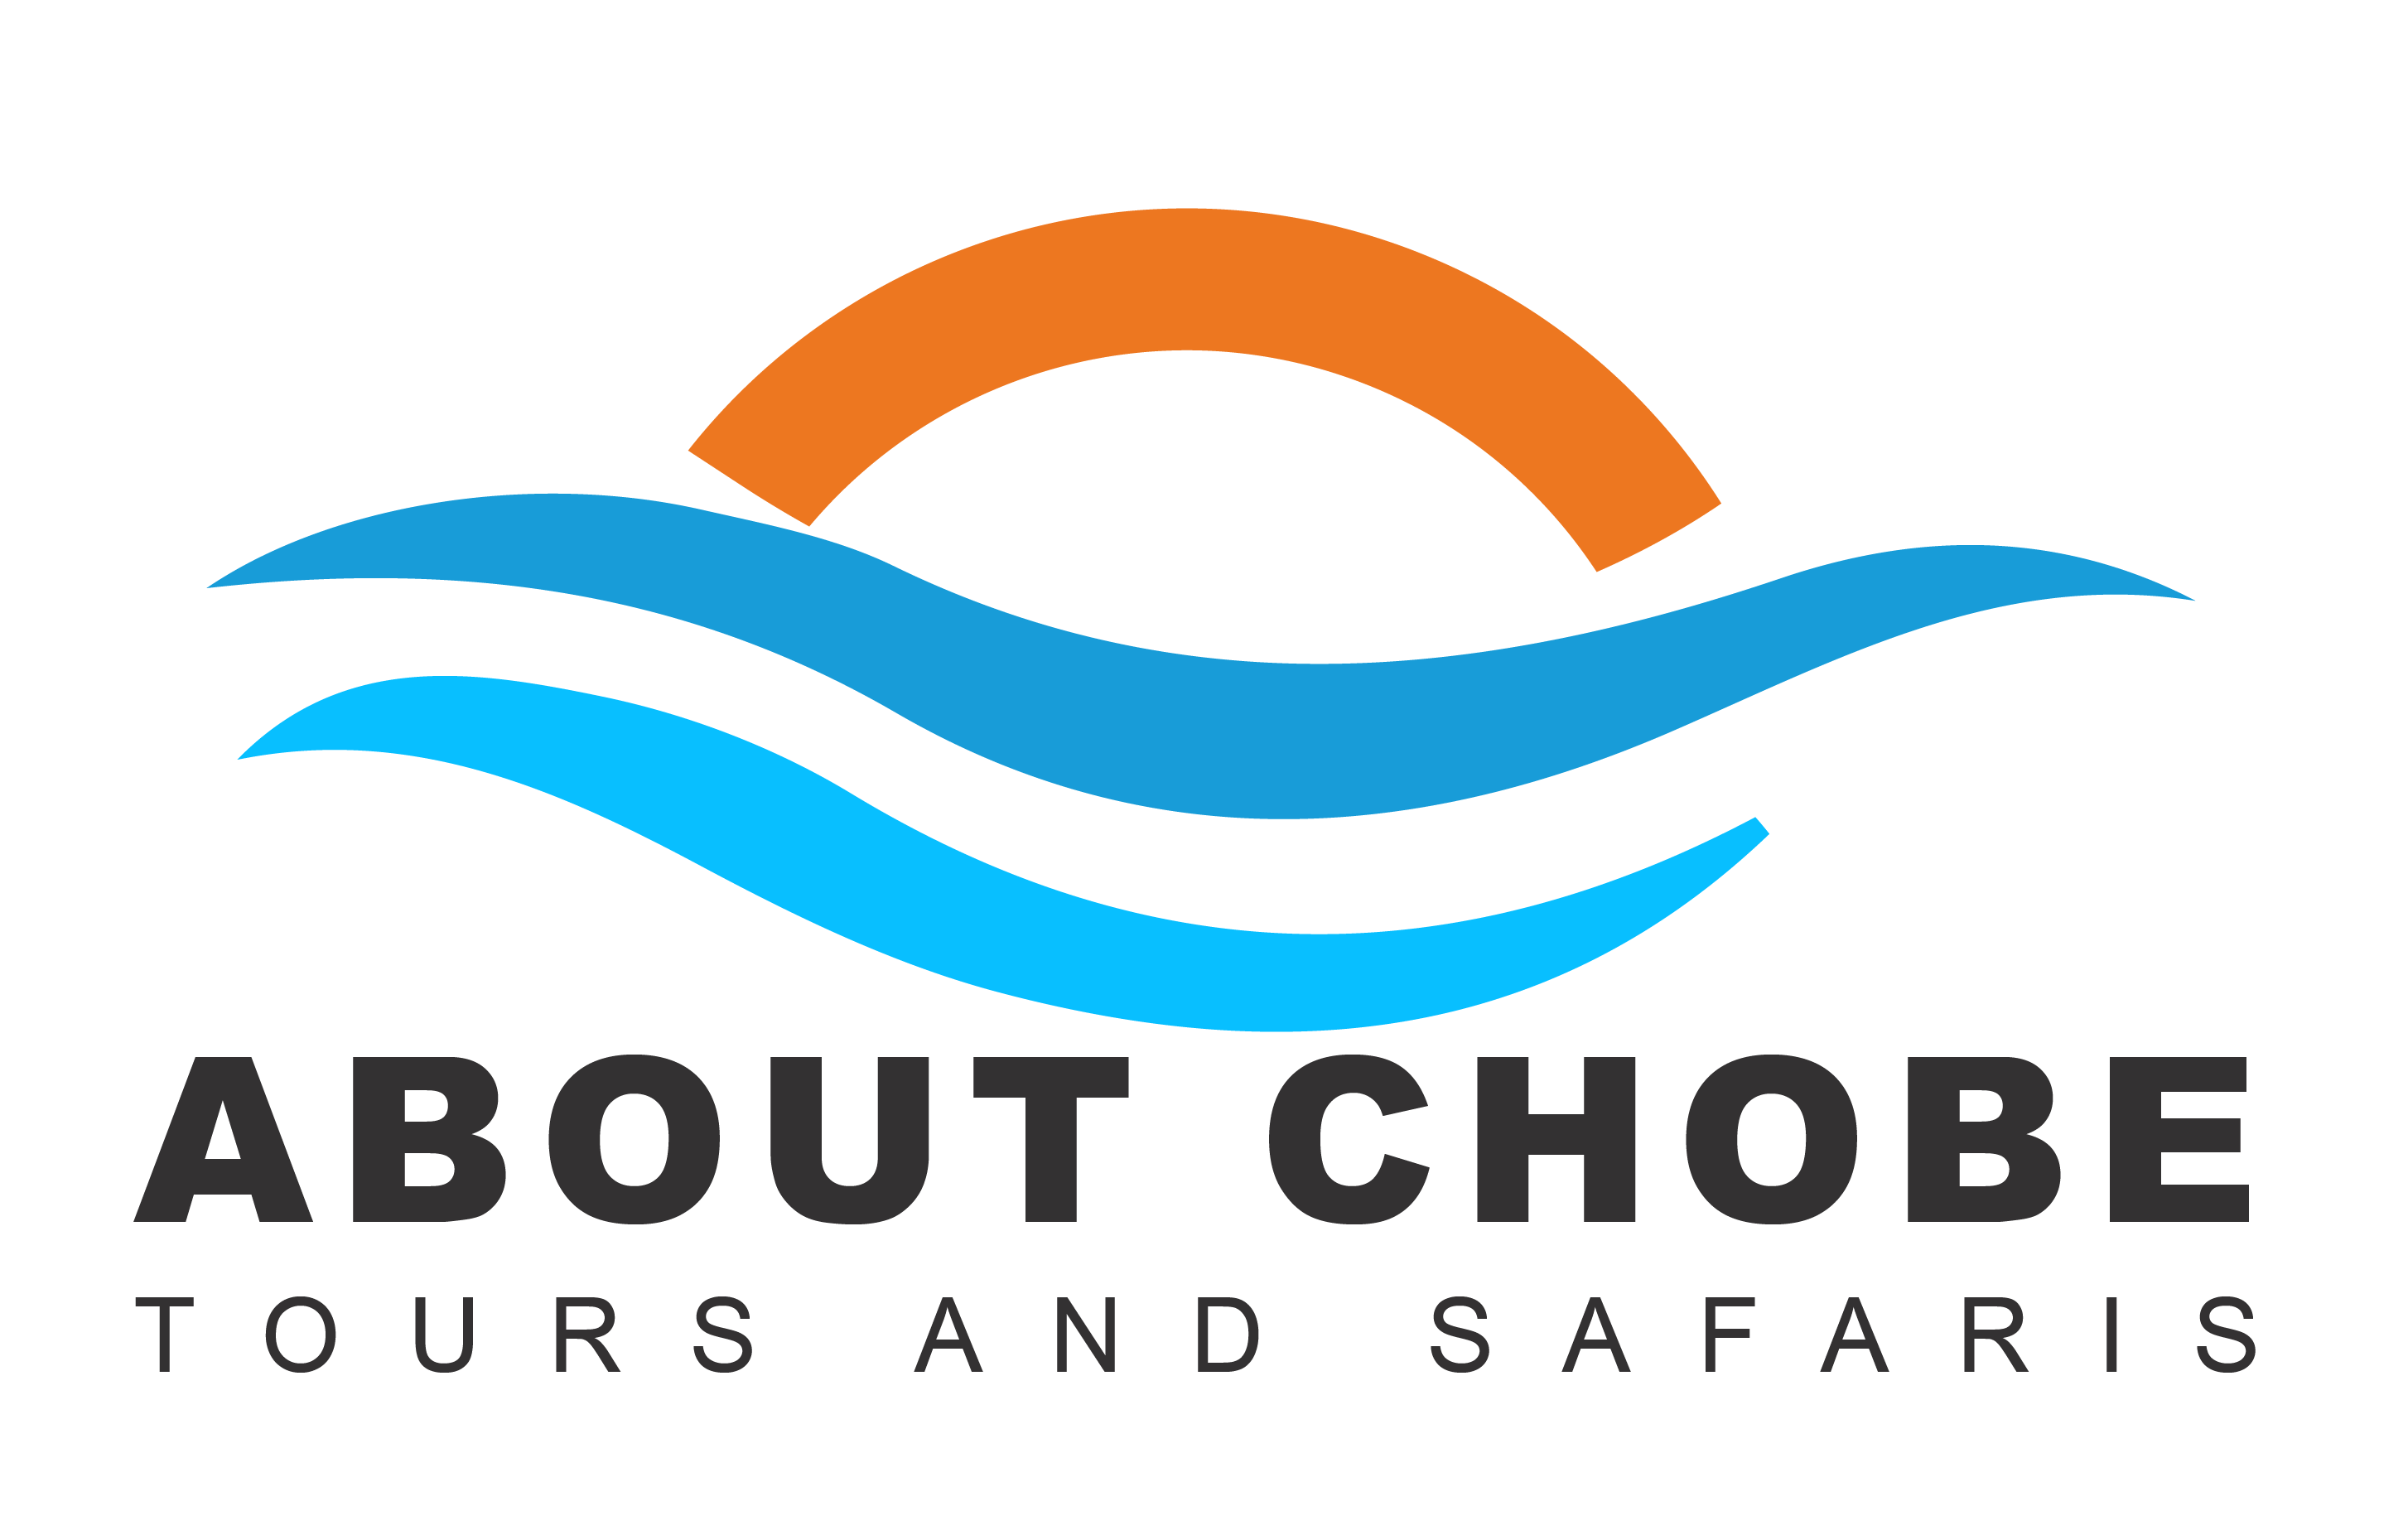 About Chobe Tours & Safaris